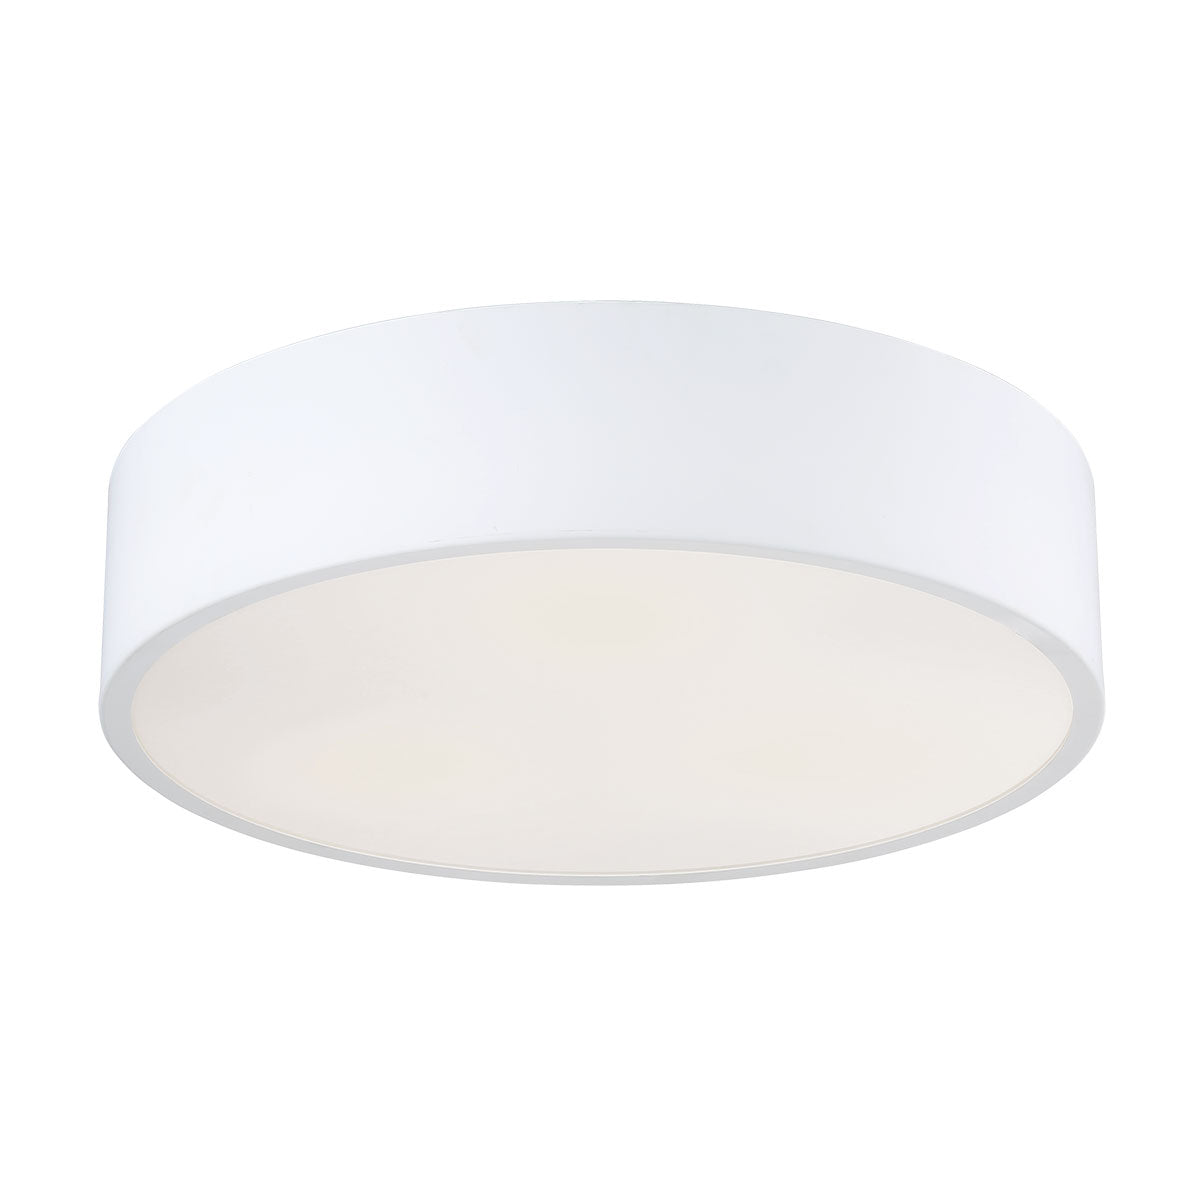 NAPOLEON Flush mount White - 32694-017 INTEGRATED LED | EUROFASE